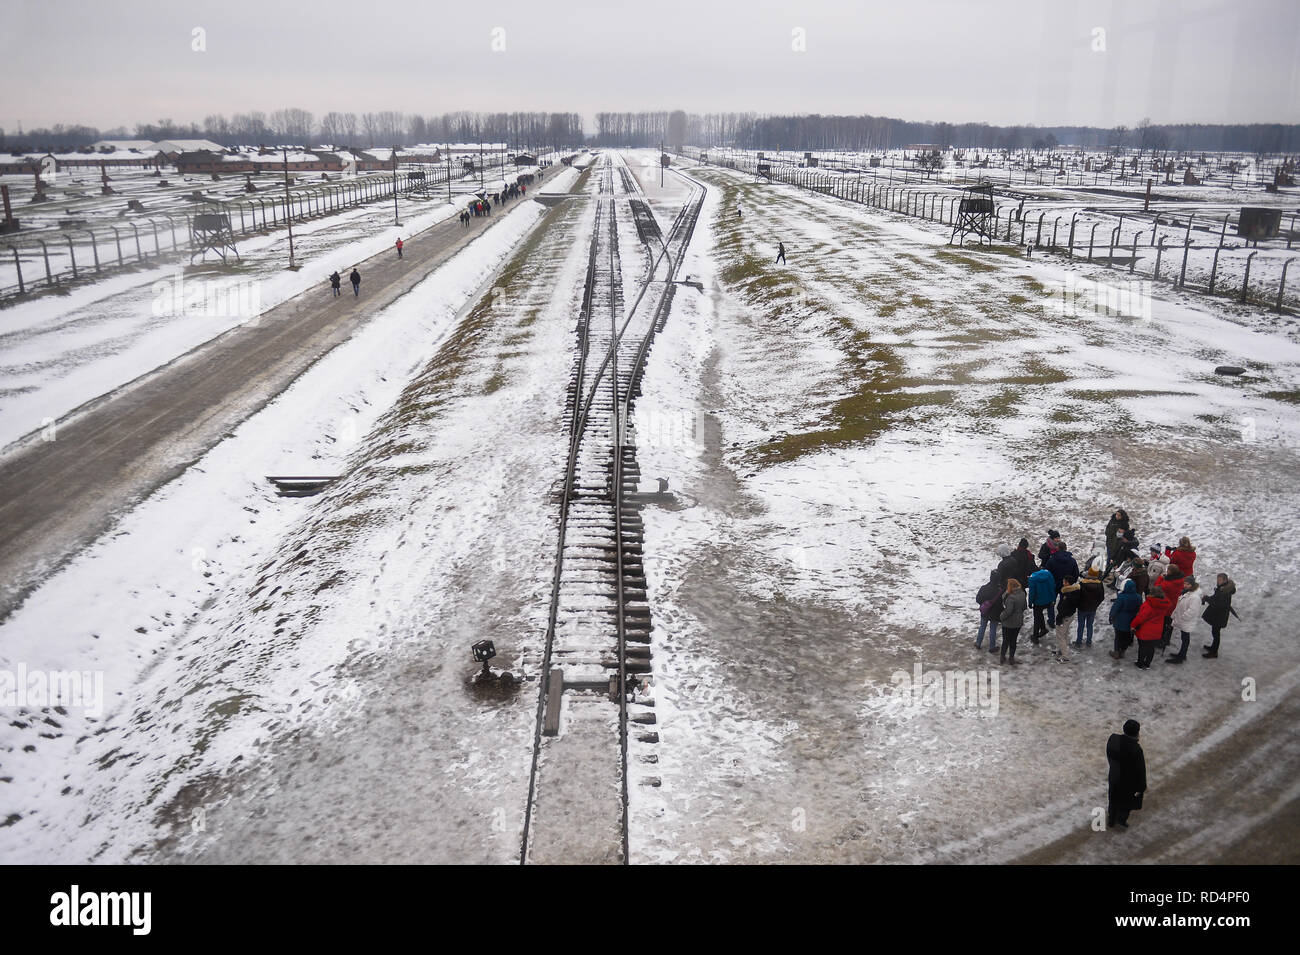 Una vista generale della ex-nazista tedesco la morte di Auschwitz-Birkenau camp. L'olocausto Giorno del Ricordo avrà luogo il 27 gennaio, dove i superstiti parteciperà alla 74anniversario della liberazione di Auschwitz celebrazioni. Foto Stock